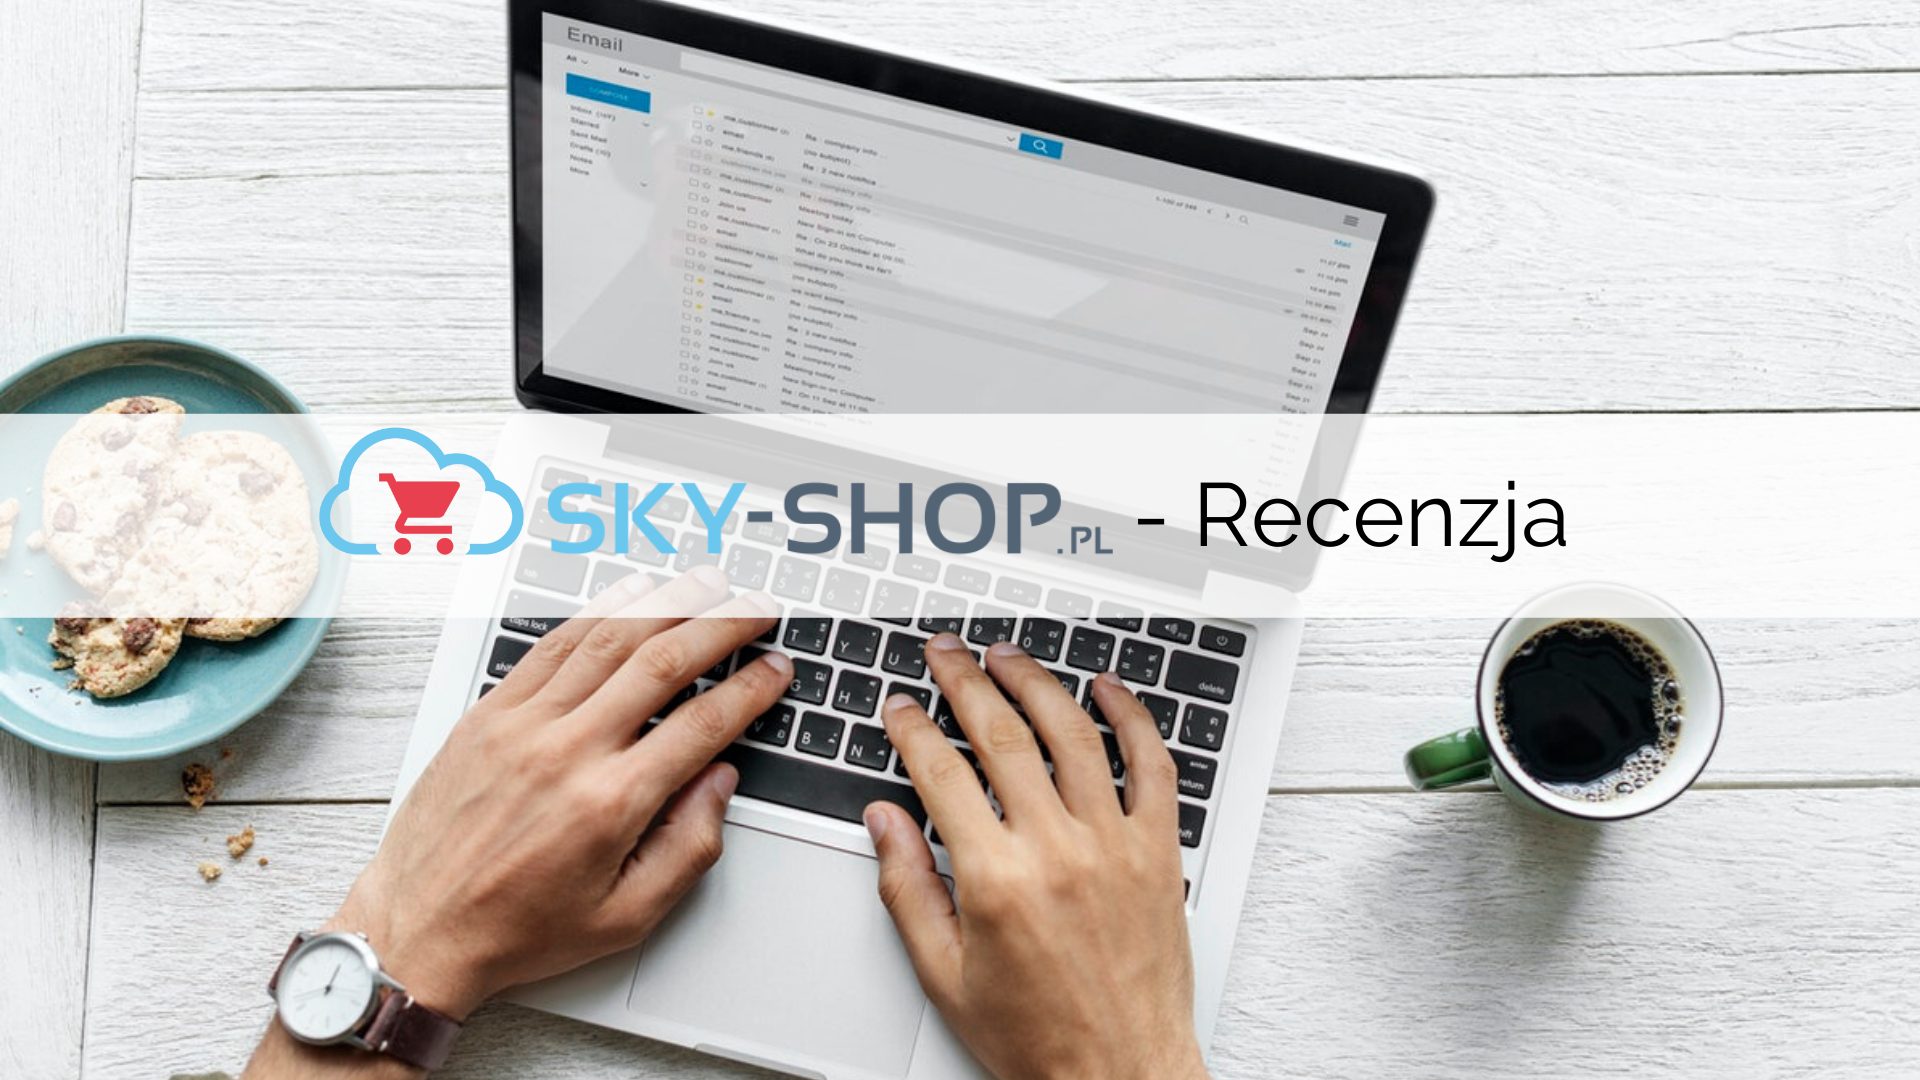 Sky-Shop – recenzja platformy e-commerce